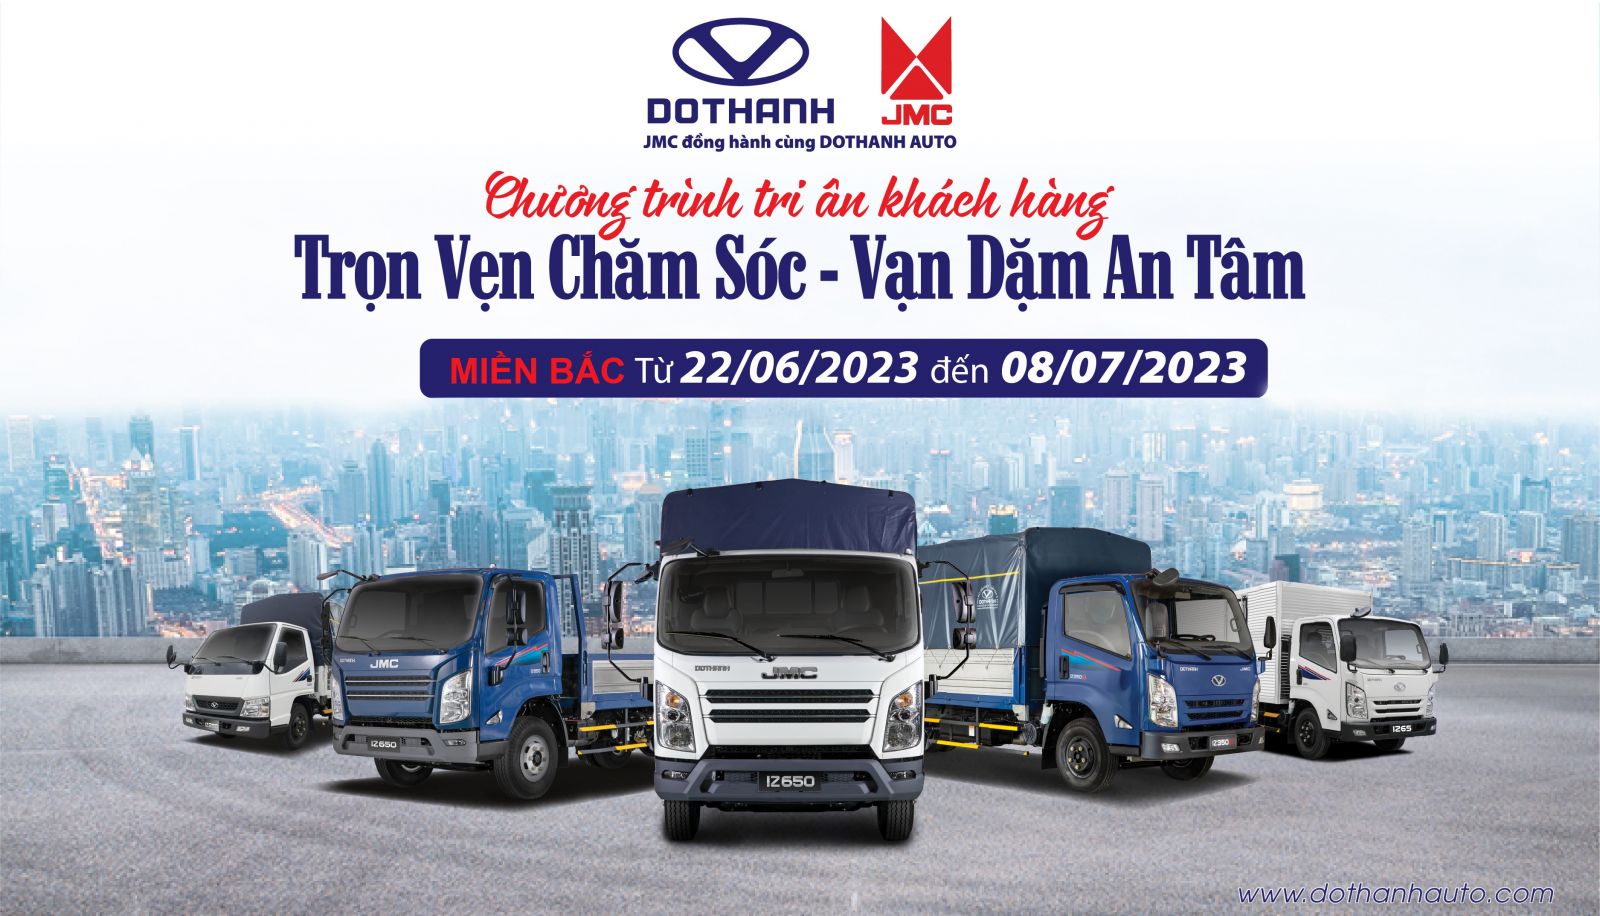 DoThanh Auto - JMC thực hiện chương trình tri ân khách hàng tin dùng xe tải DOTHANH IZ Miền Bắc “TRỌN VẸN CHĂM SÓC - VẠN DẶM AN TÂM”